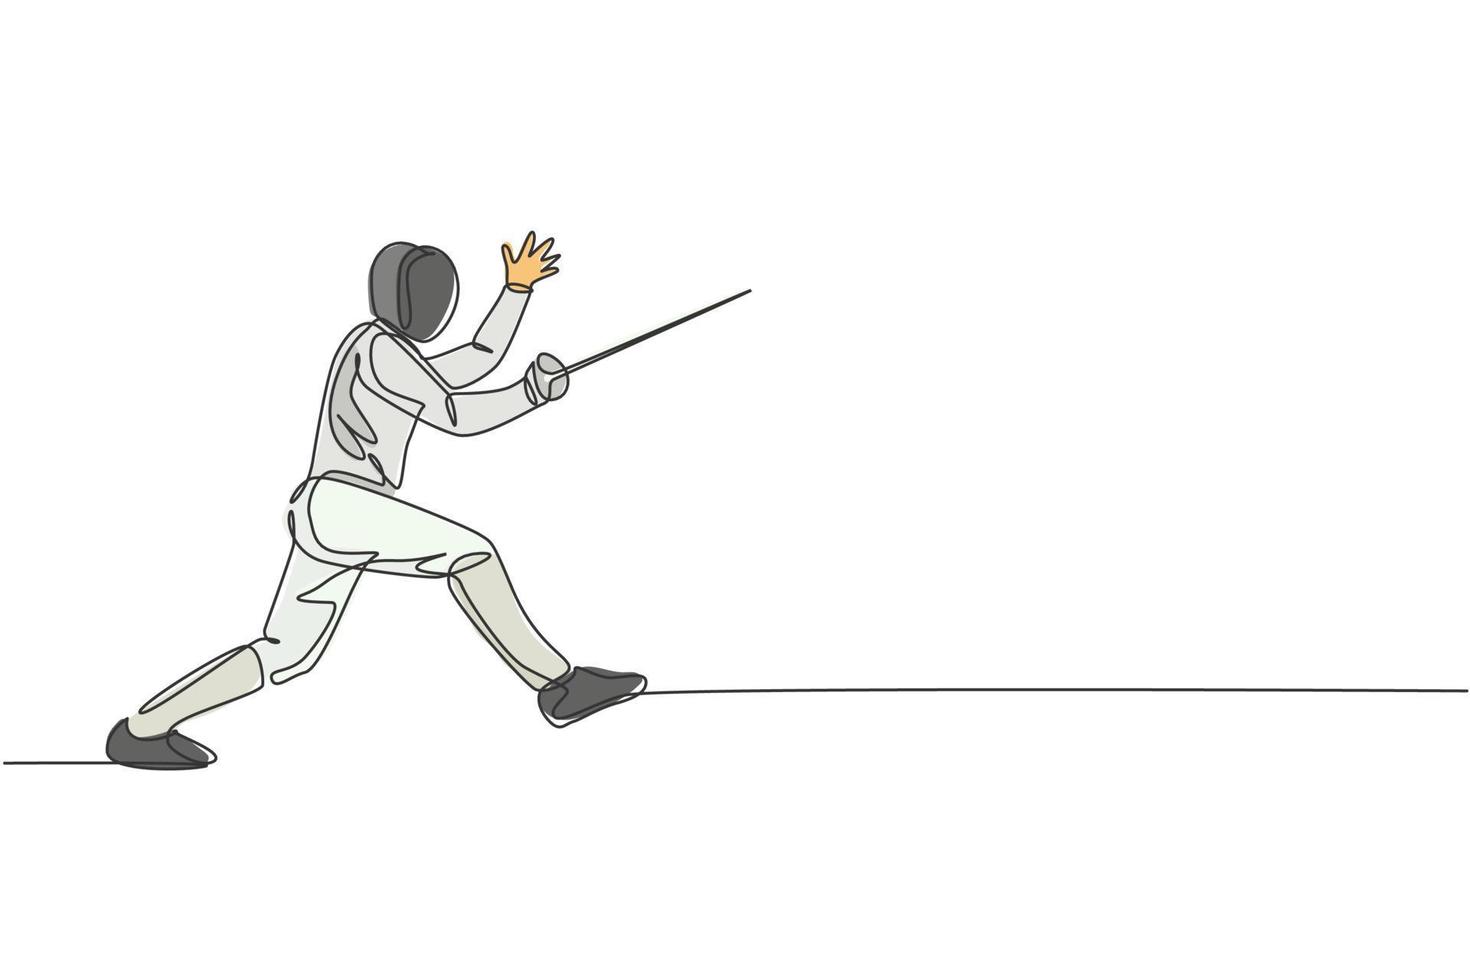 un dibujo de línea continua de un joven atleta de esgrima que practica peleas en un campo deportivo profesional. traje de esgrima y concepto de espada de sujeción. Ilustración de vector de diseño de dibujo de línea única dinámica